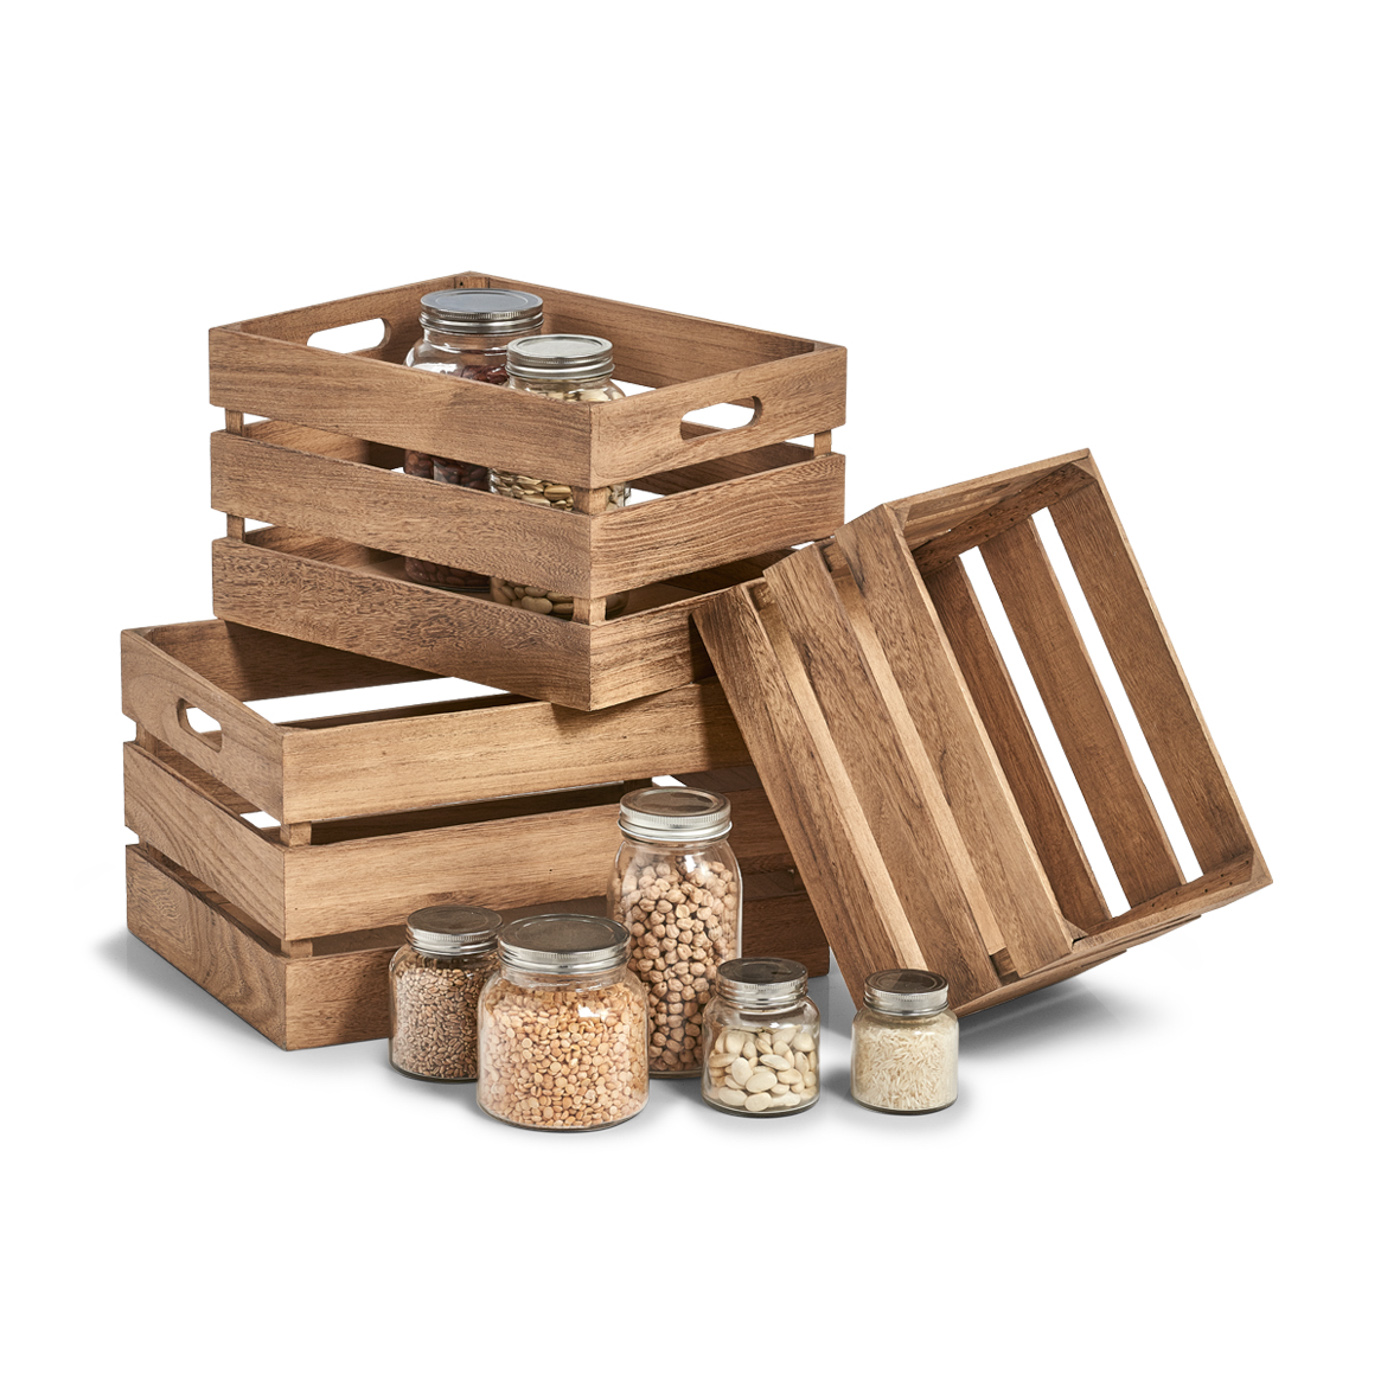 Aufbewahrungs-Kiste, Holz lackiert, 31x21x19 cm. Farbe: natur. Diese praktische Aufbewahrungskiste wurde aus hochwertigem Holz gefertigt und